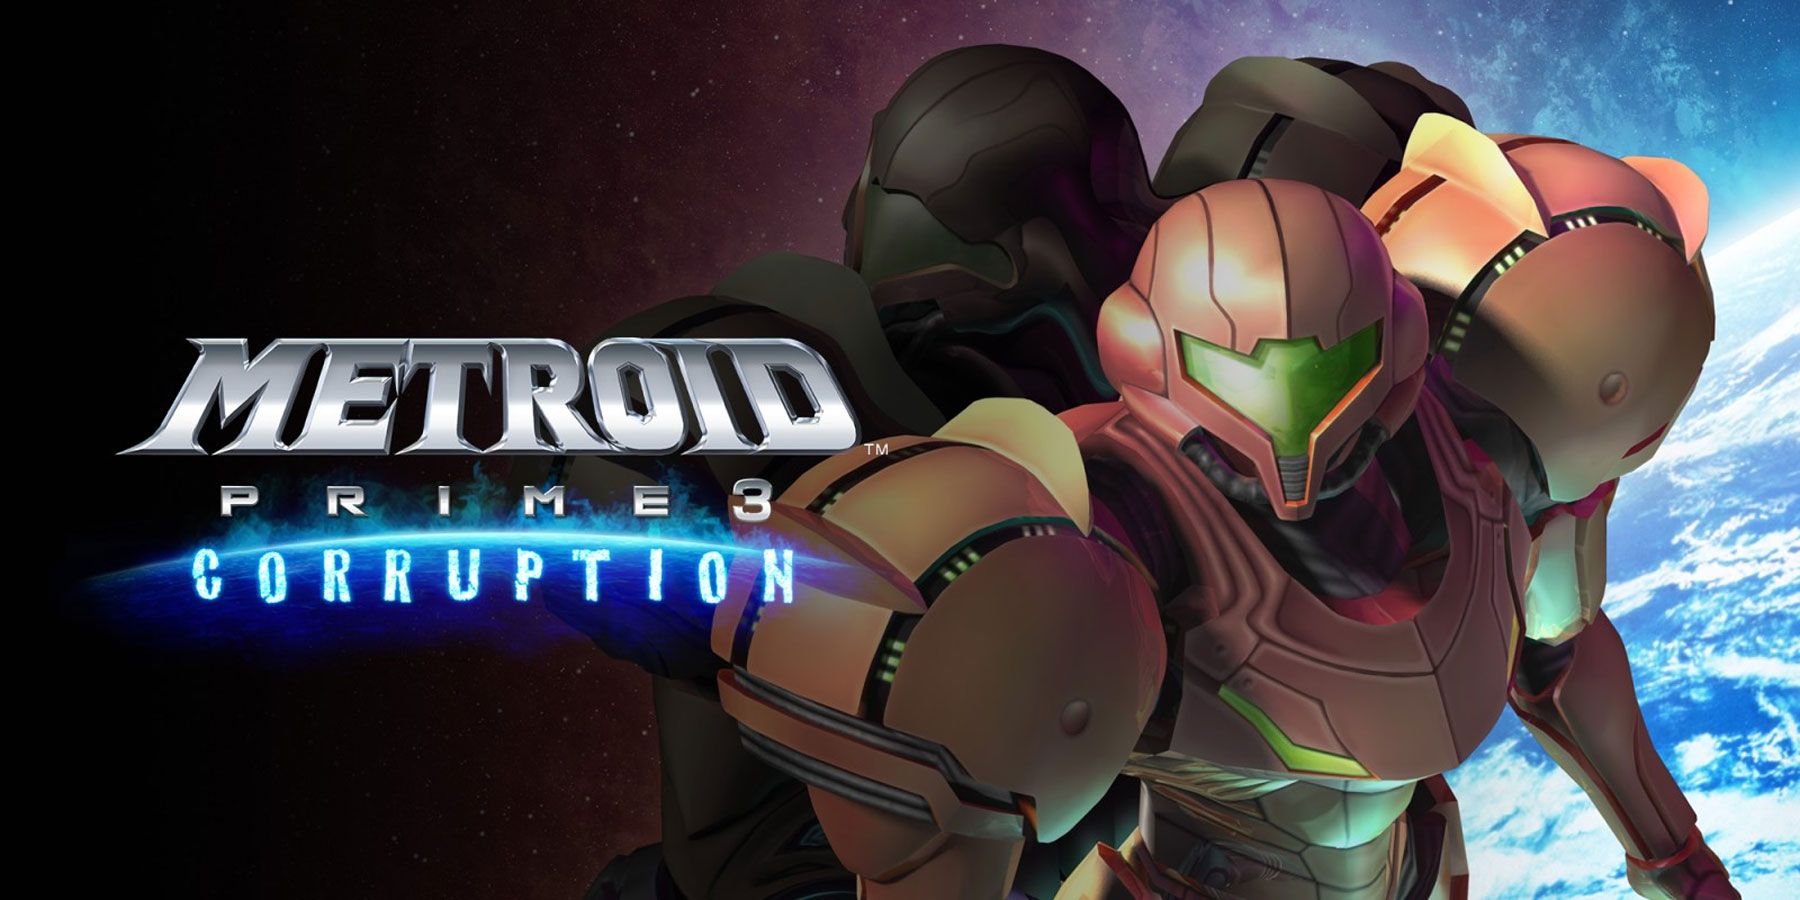 Metroid Prime 3 първоначално беше представен като игра с отворен свят